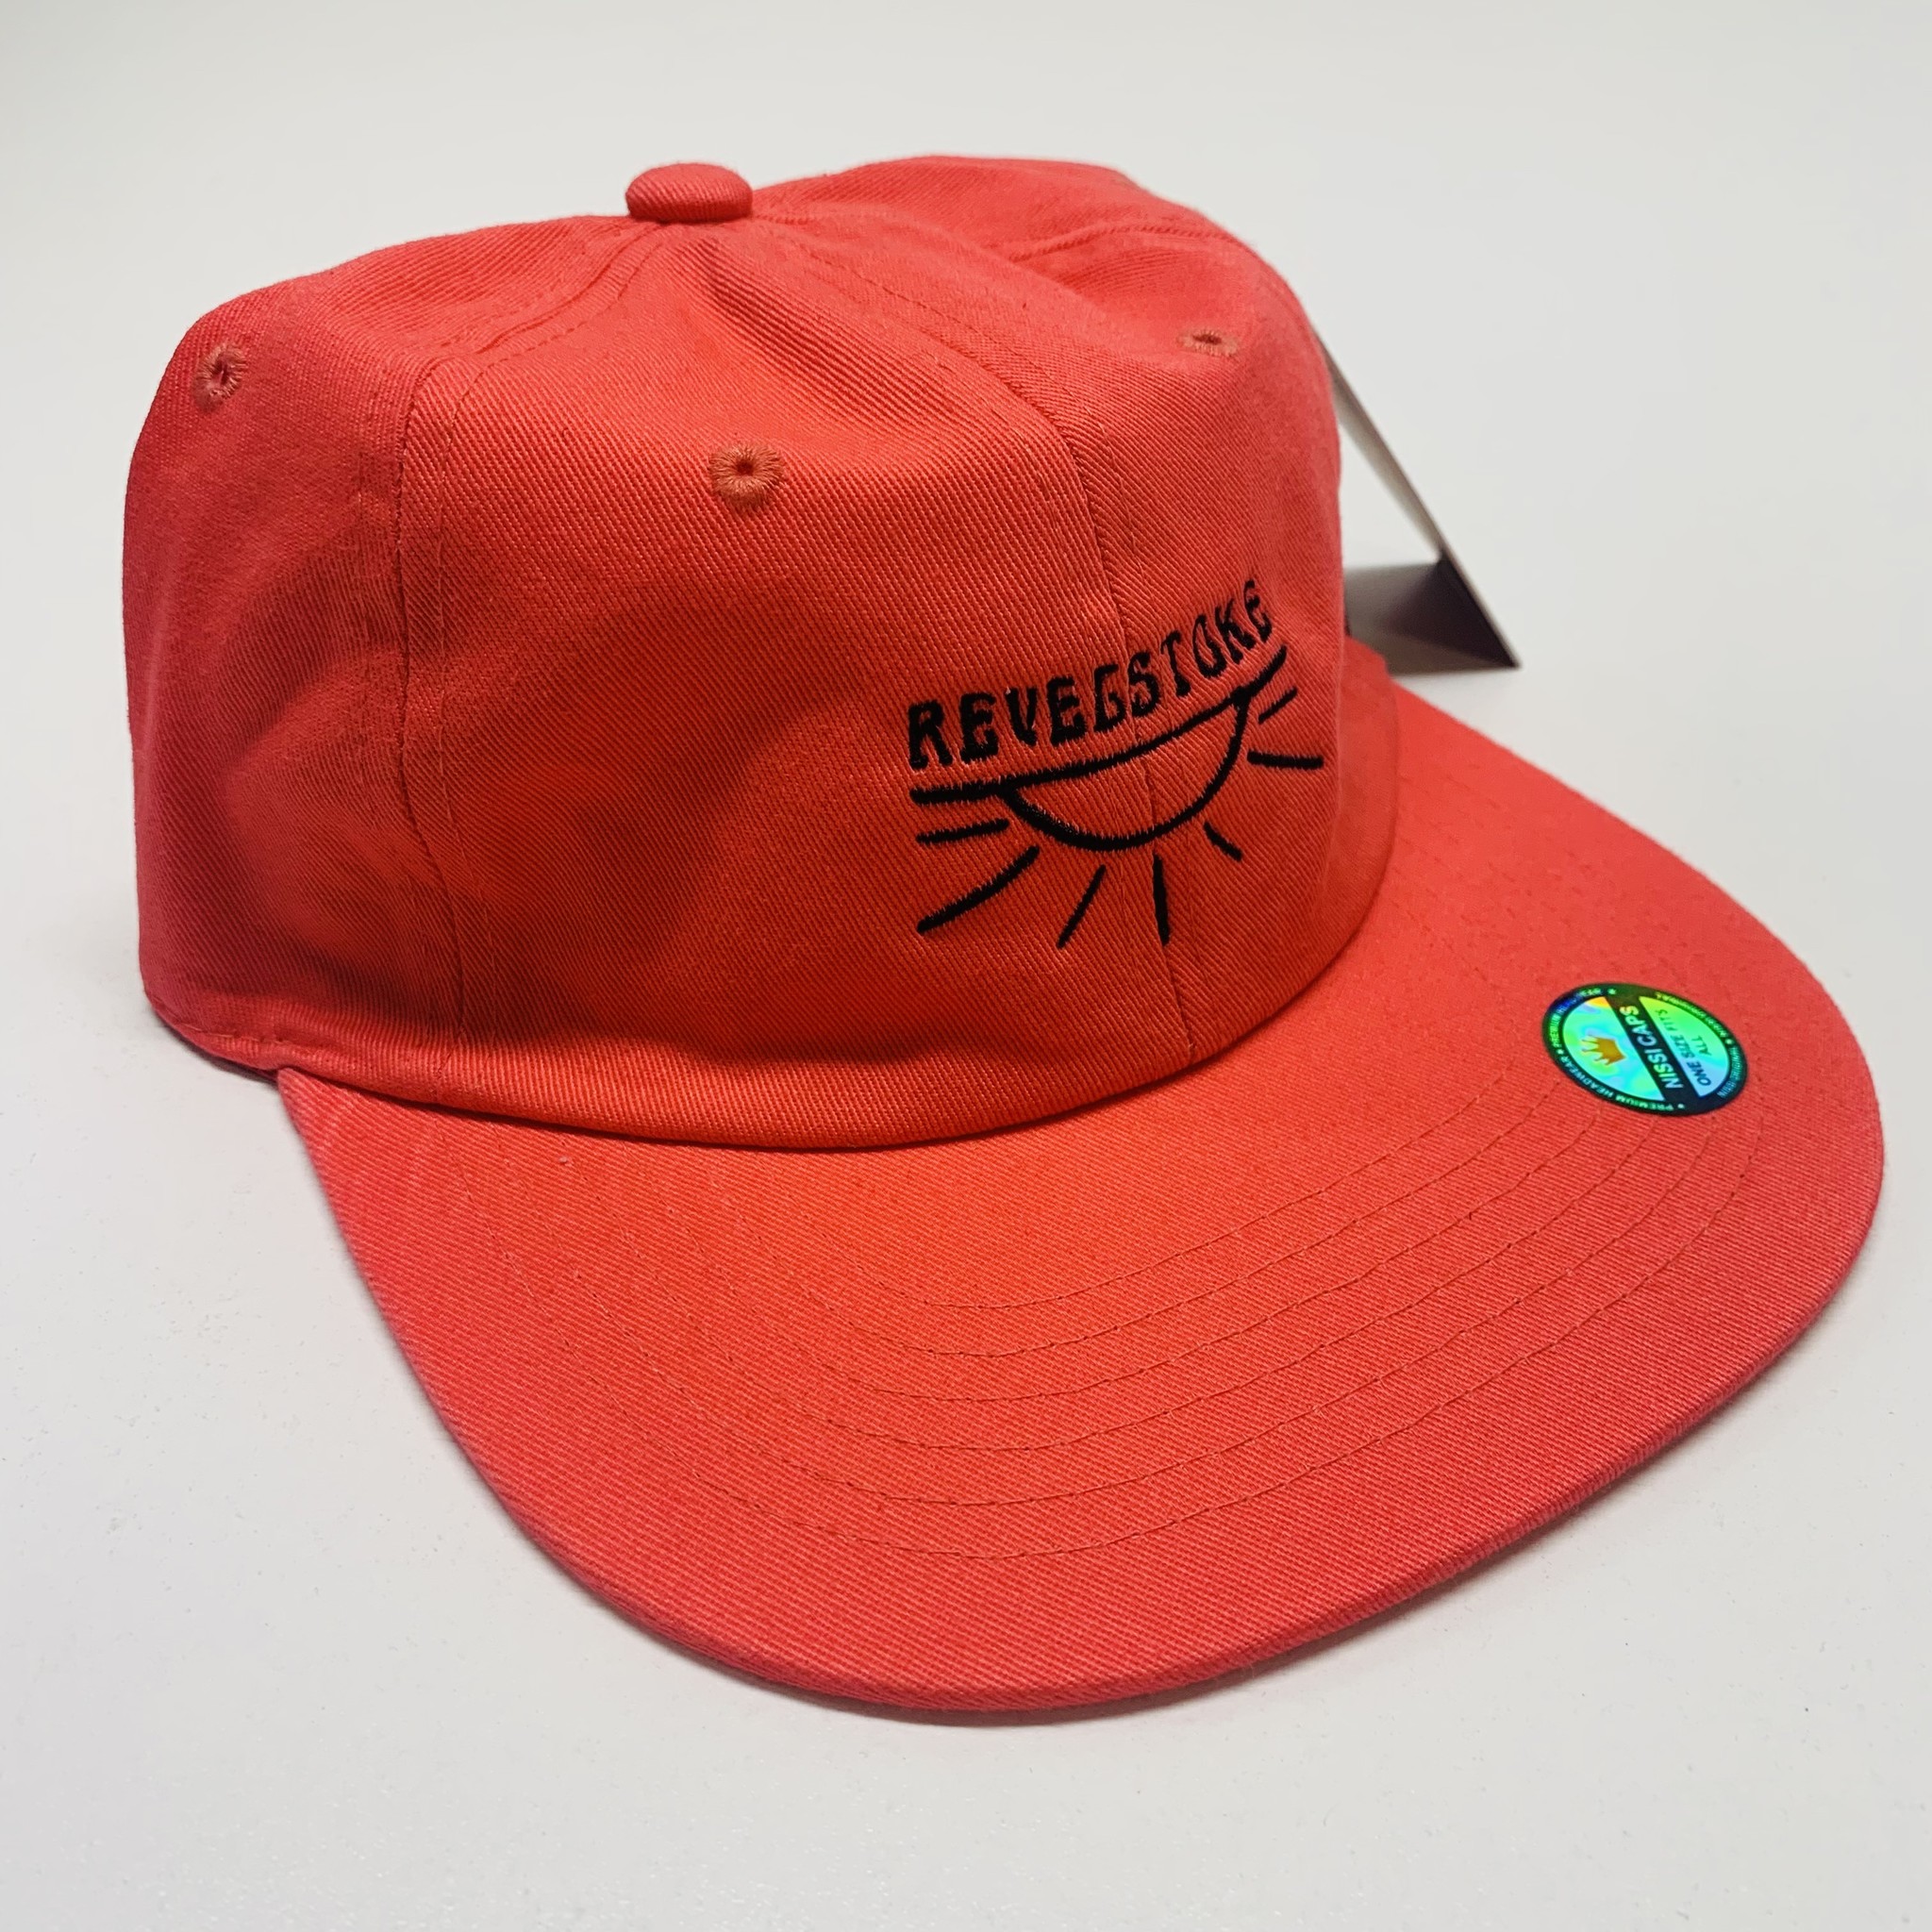 Trading Co. Revelstoke - Over Easy Cap (Pink)